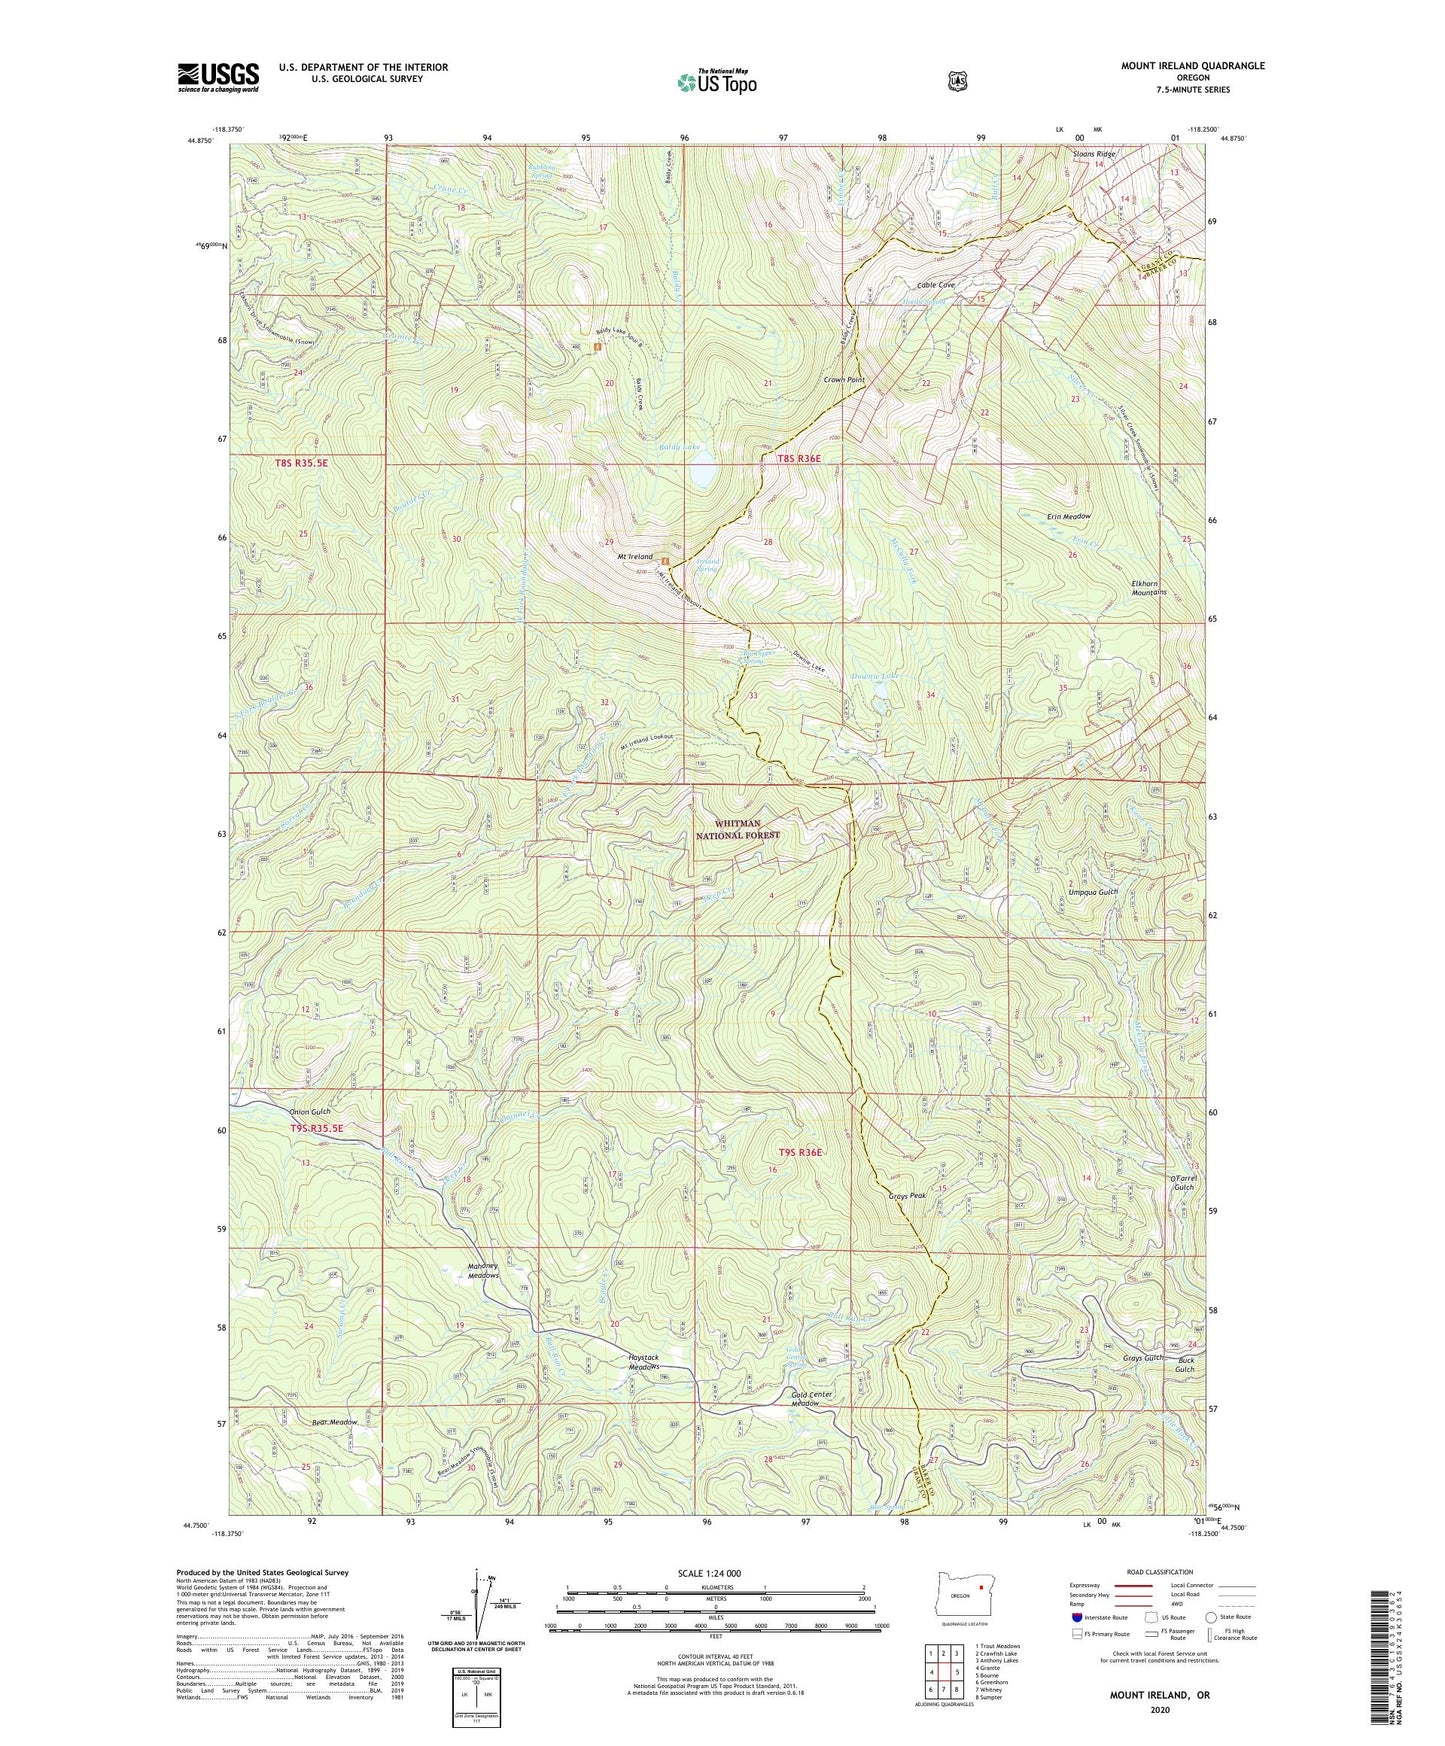 Mount Ireland Oregon US Topo Map Image